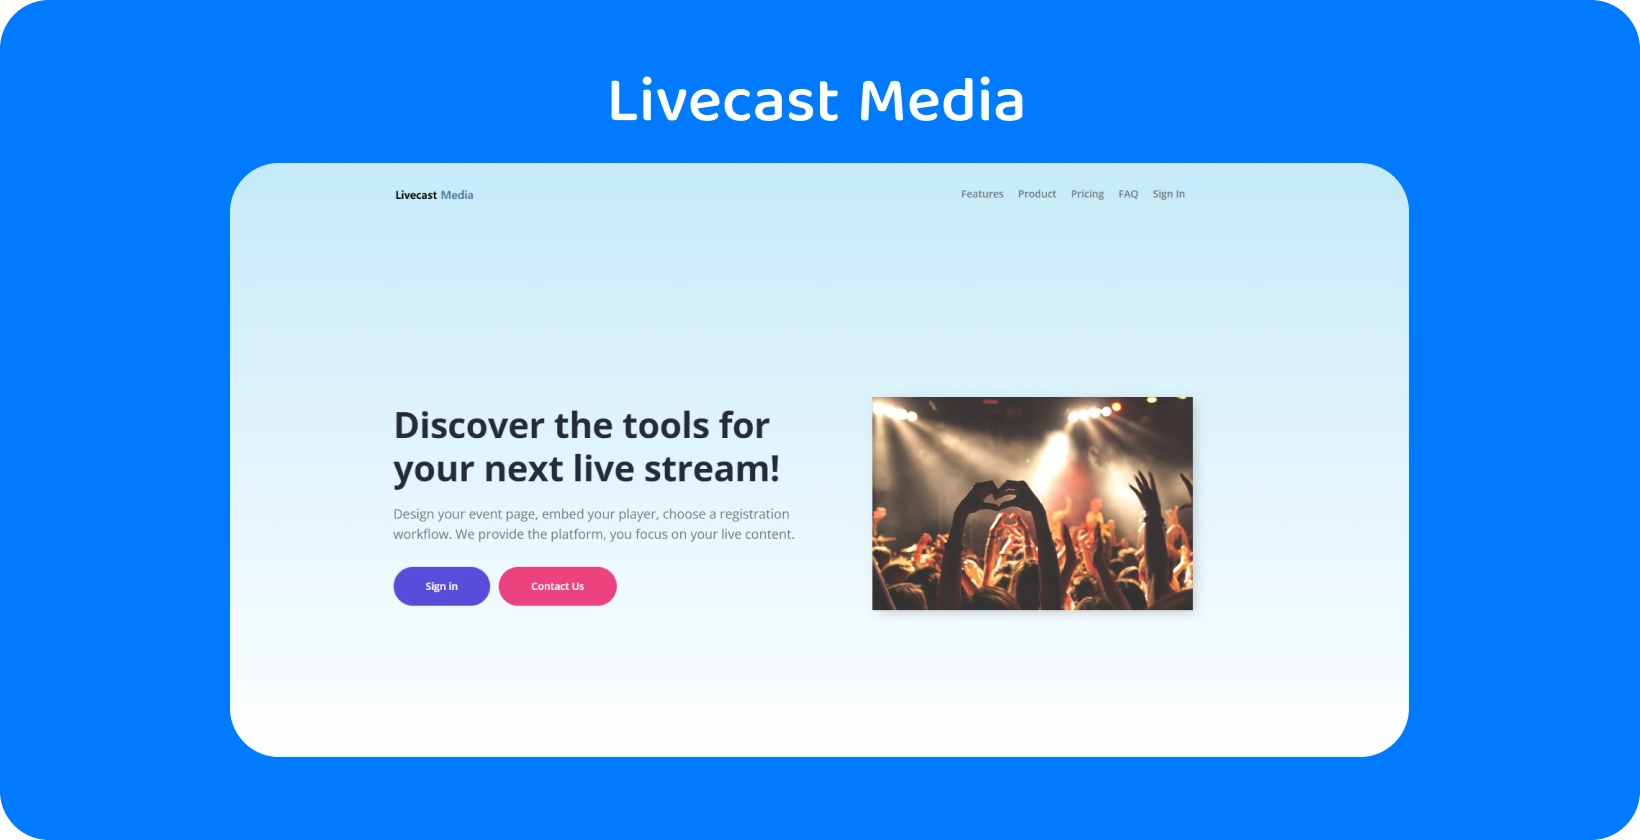 Engagera dig med publiken med hjälp av Livecast Medias streamingverktyg, perfekta för att skapa minnesvärda liveevenemang.